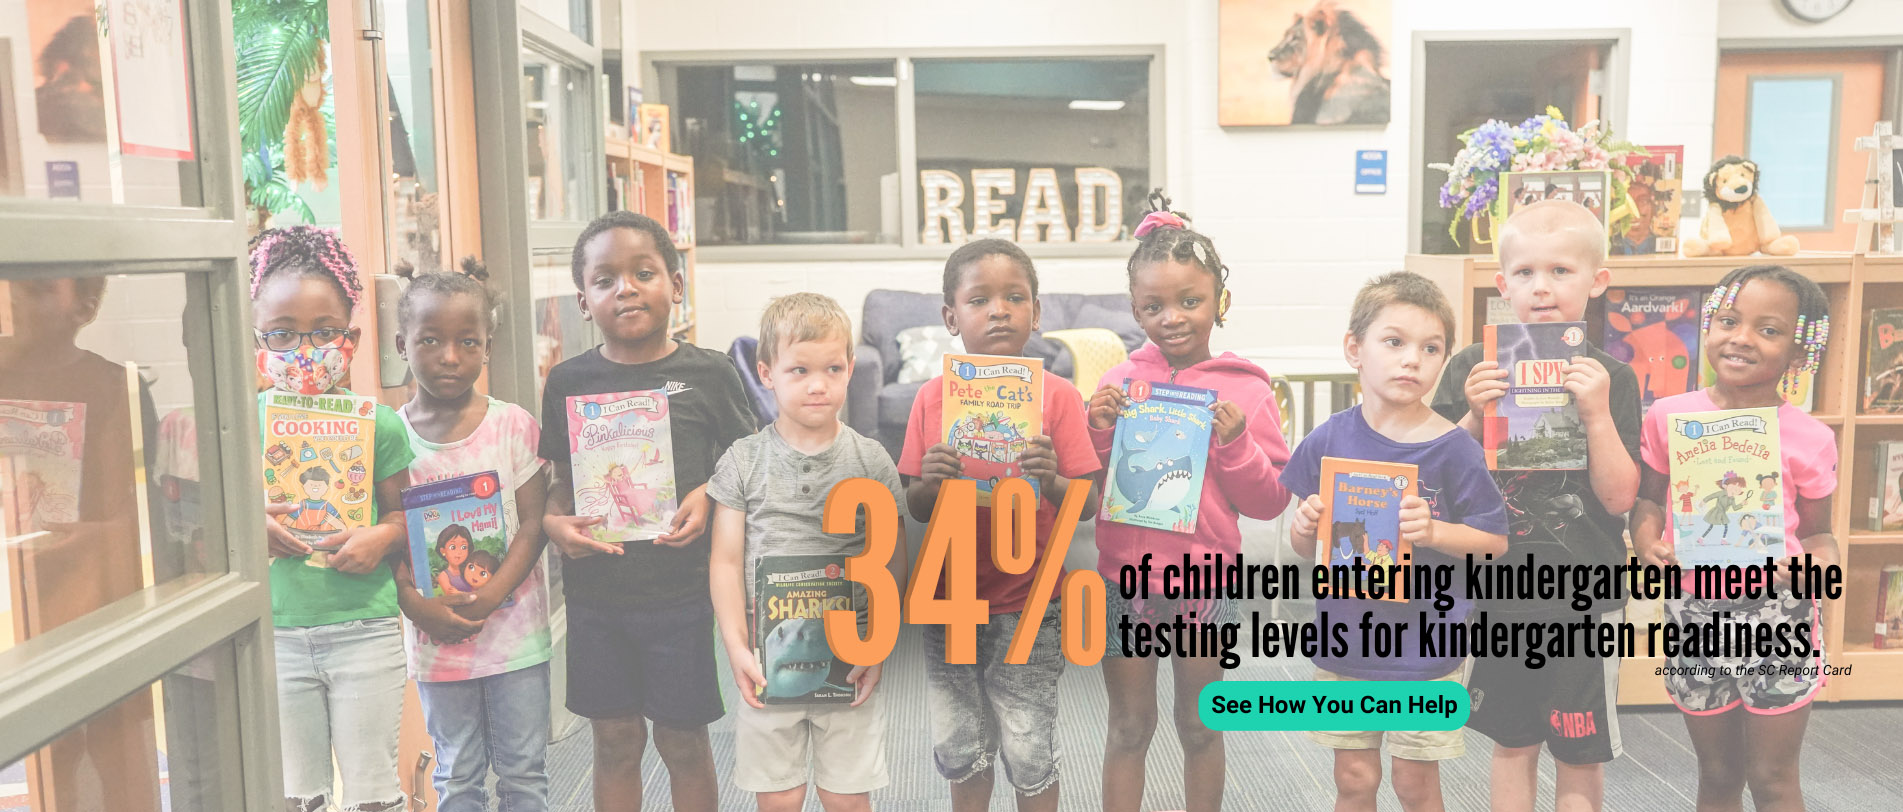 34% of children entering kindergarten meet the testing levels for kindergarten readiness